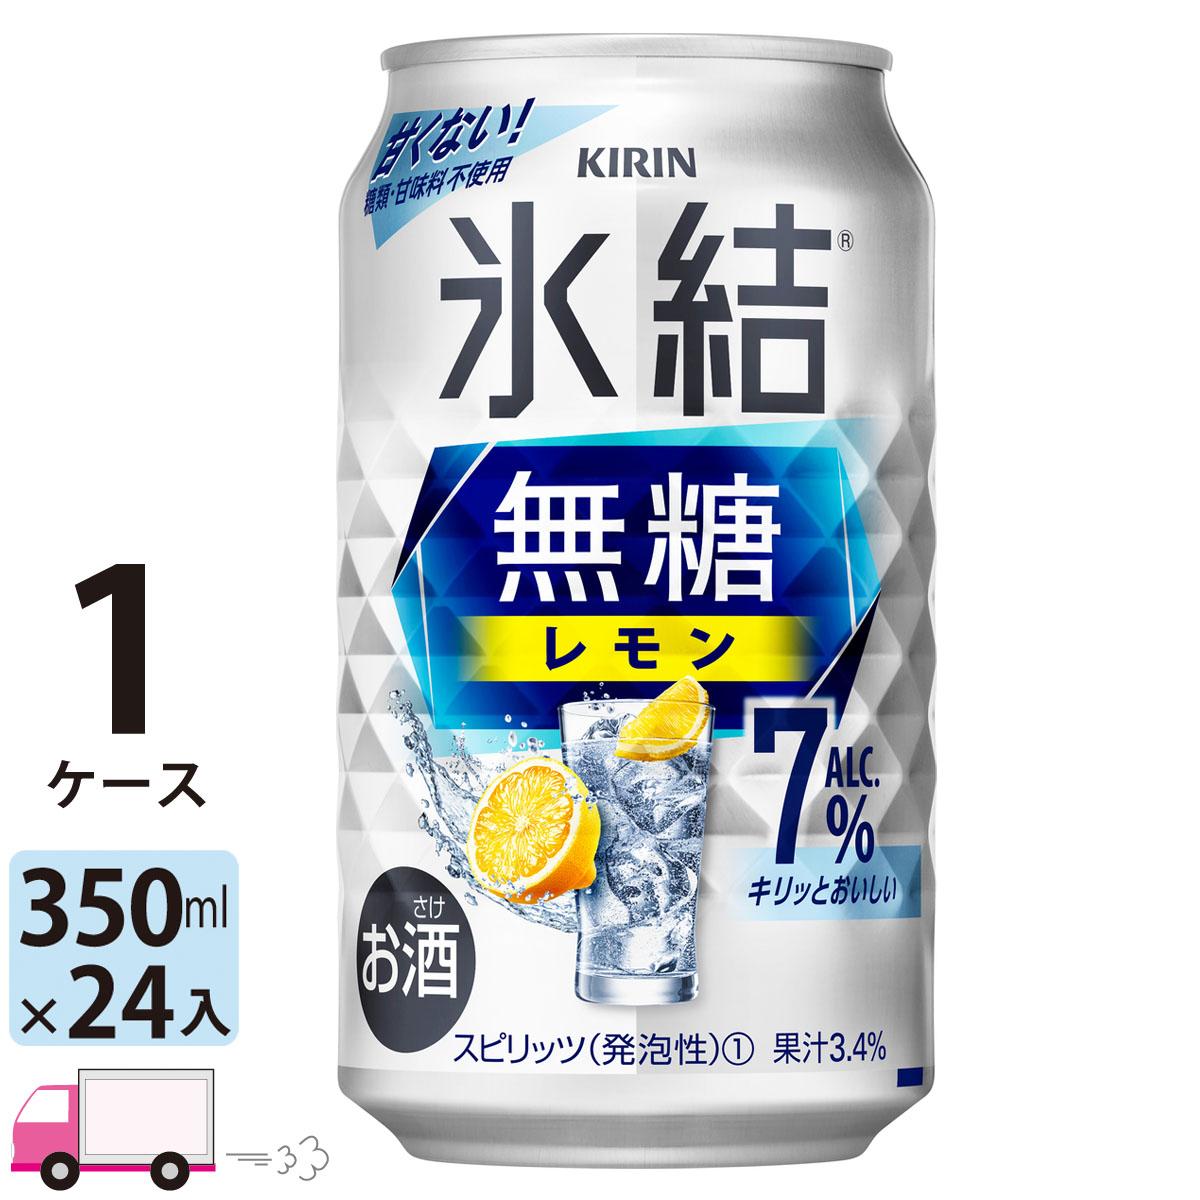  キリン 氷結 無糖 レモン 7% 350ml 24本 1ケース